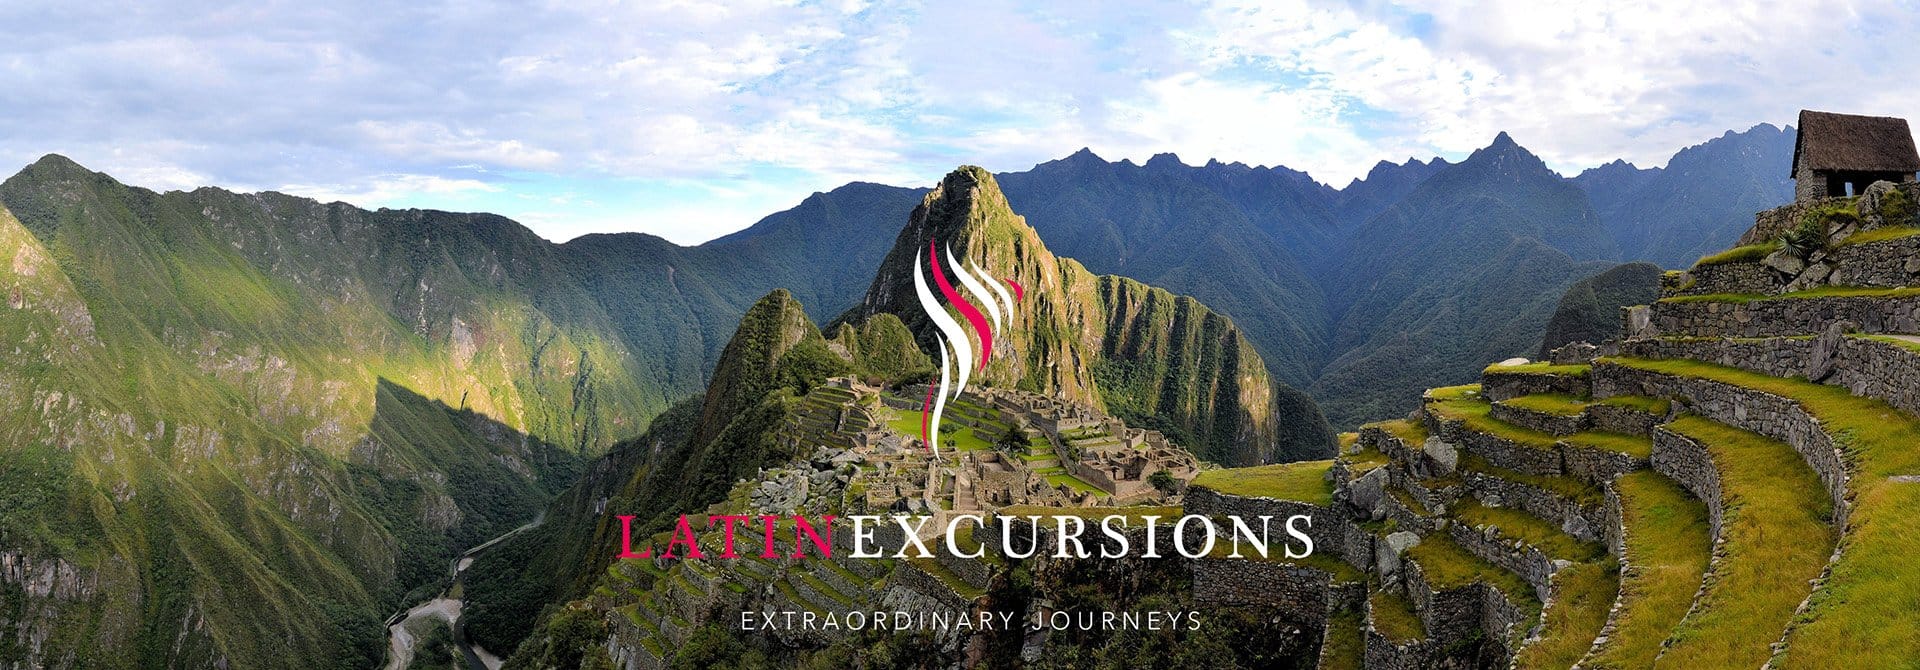 Machu Picchu Latin Excursion